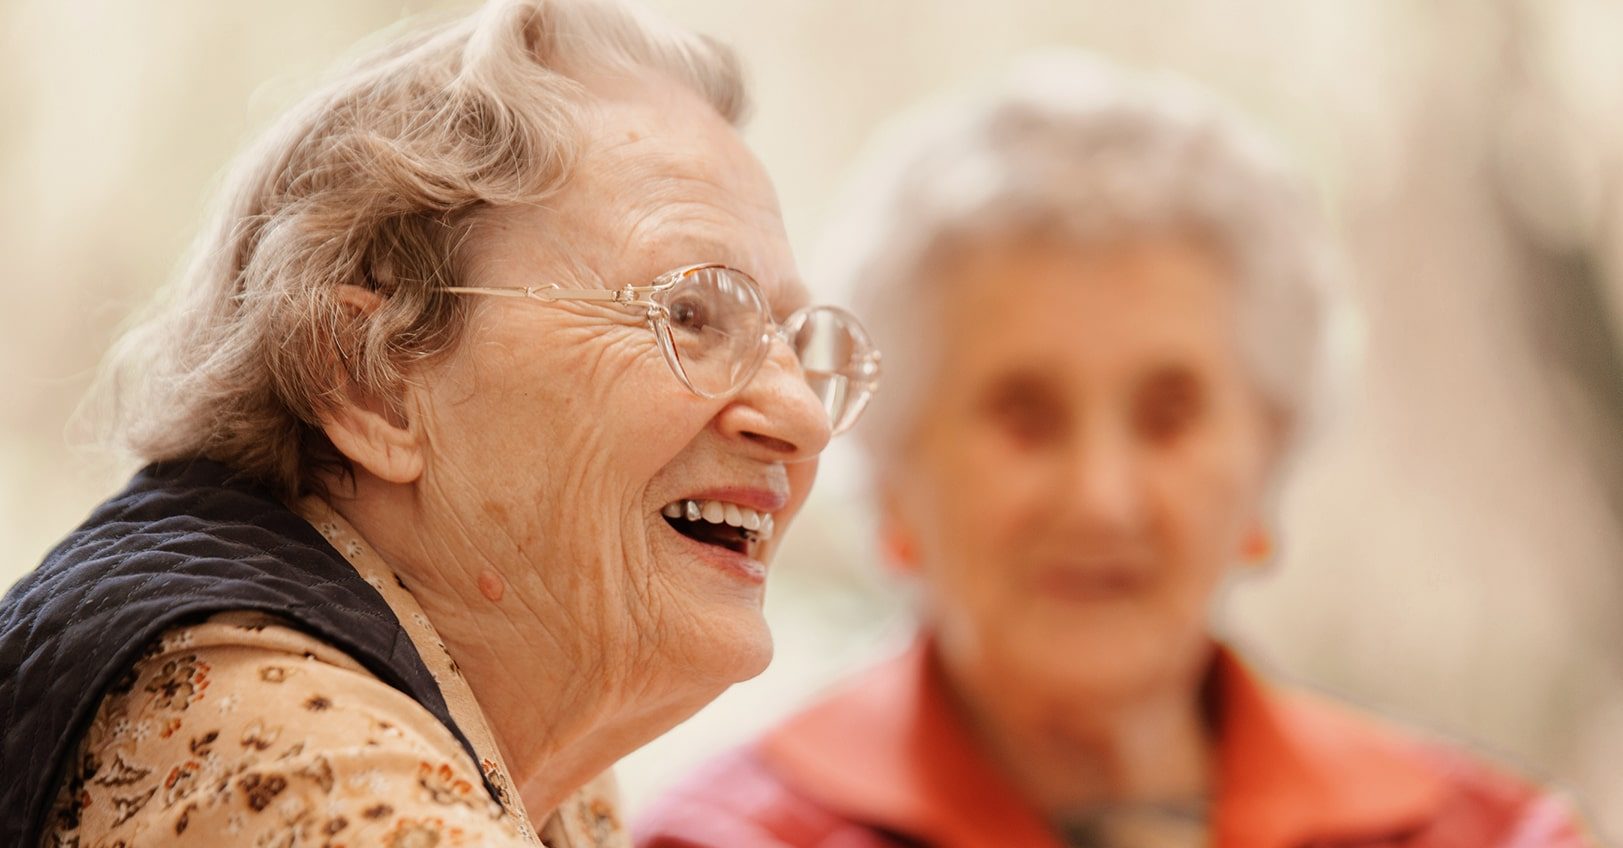 Close-up photo of a smiling senior.